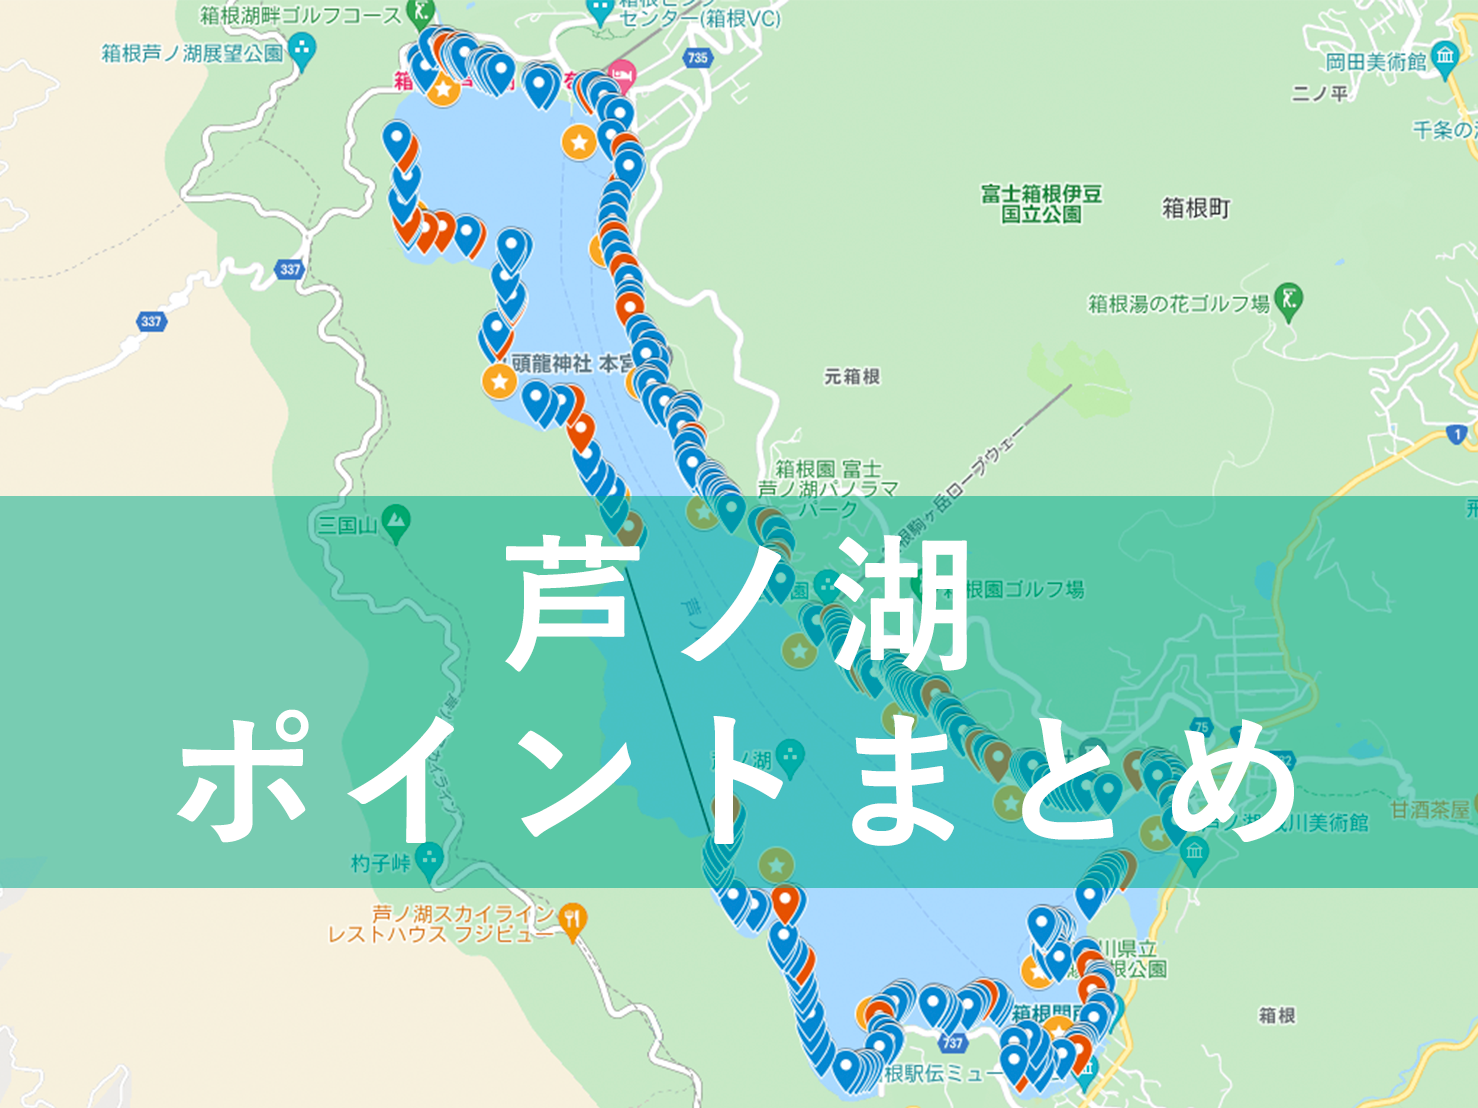 永久保存版 芦ノ湖バス釣りポイントマップ作りました 釣りウマを目指して